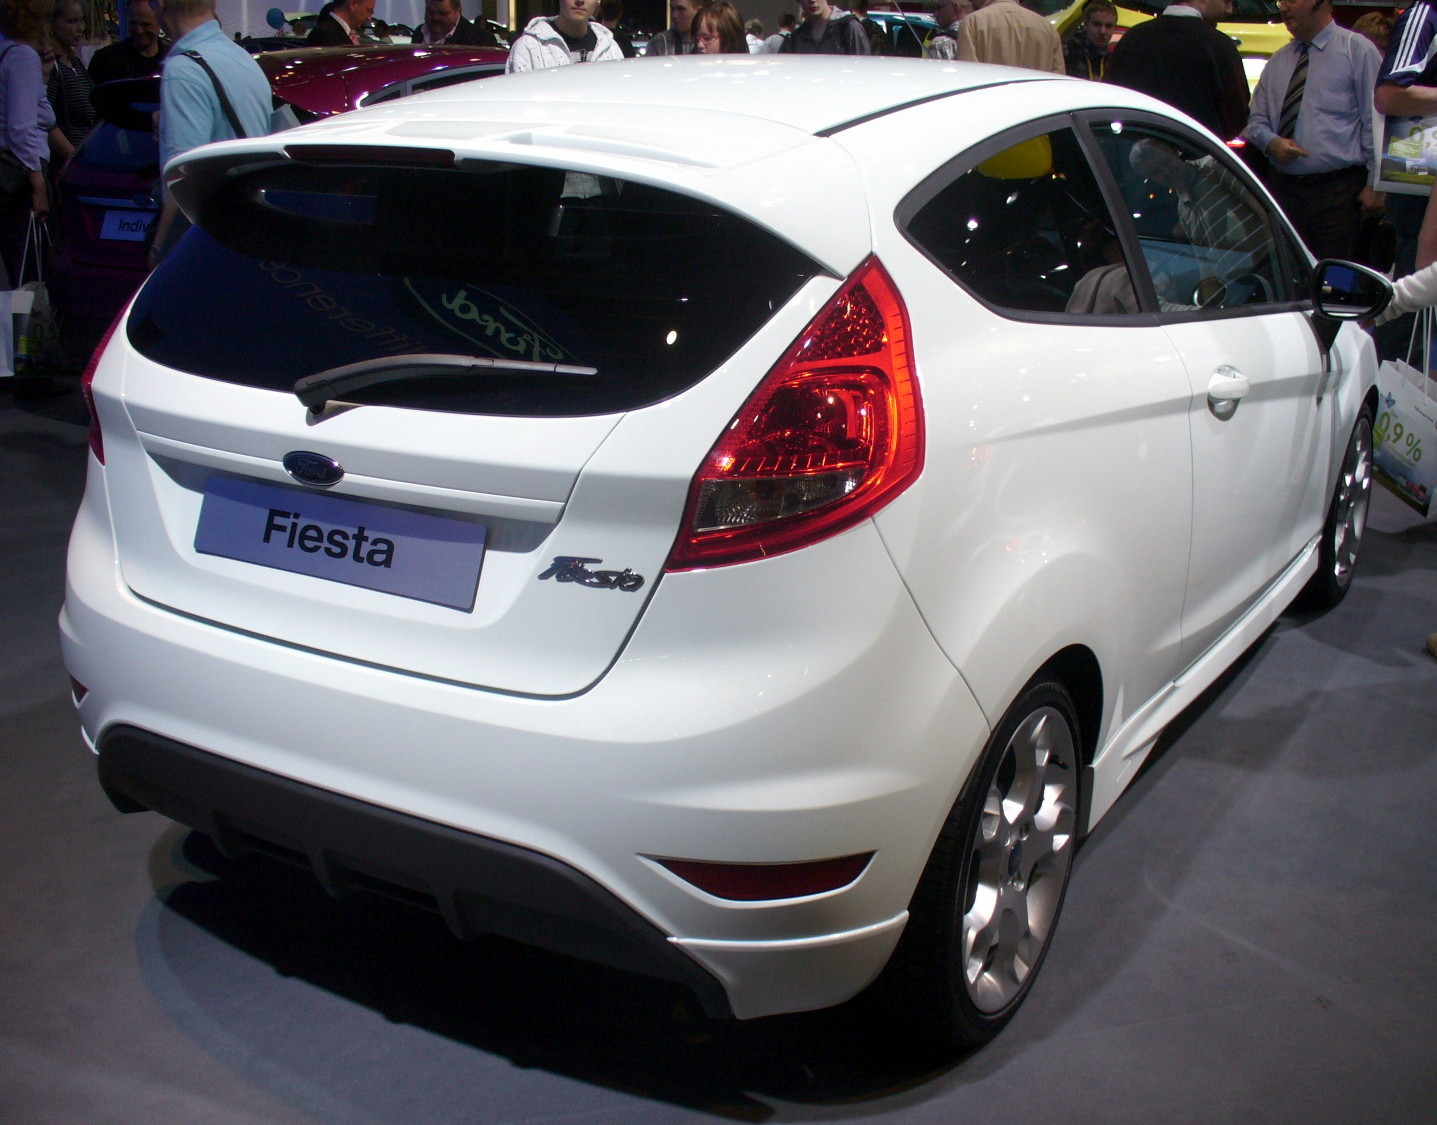 Ford Fiesta Sport